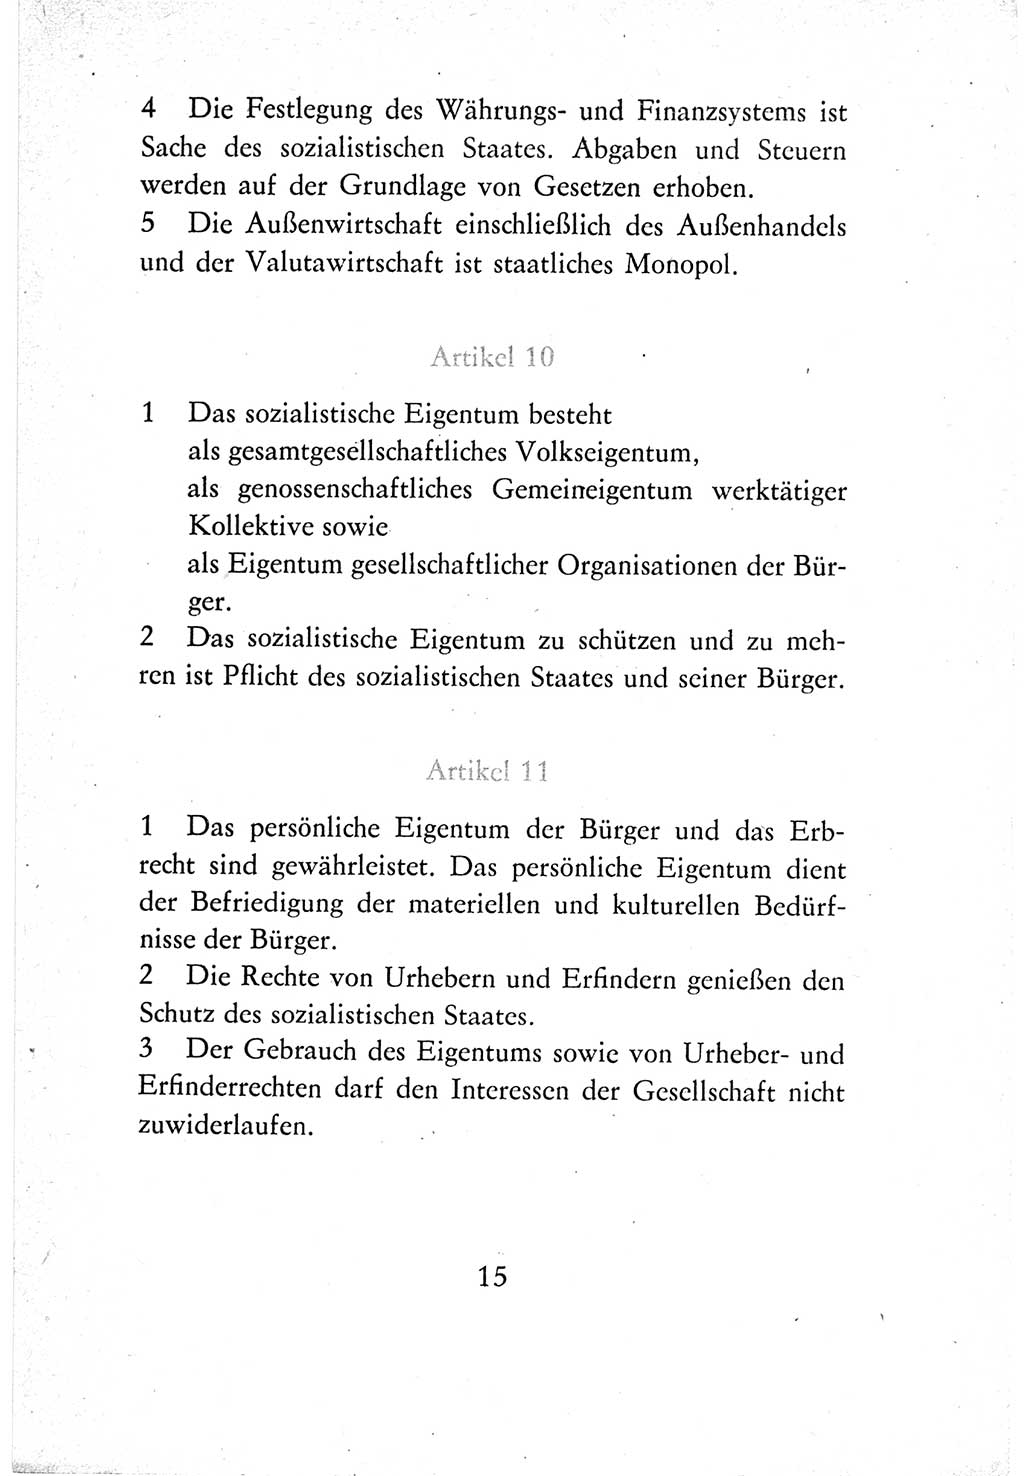 Verfassung der Deutschen Demokratischen Republik (DDR) vom 7. Oktober 1974, Seite 15 (Verf. DDR 1974, S. 15)